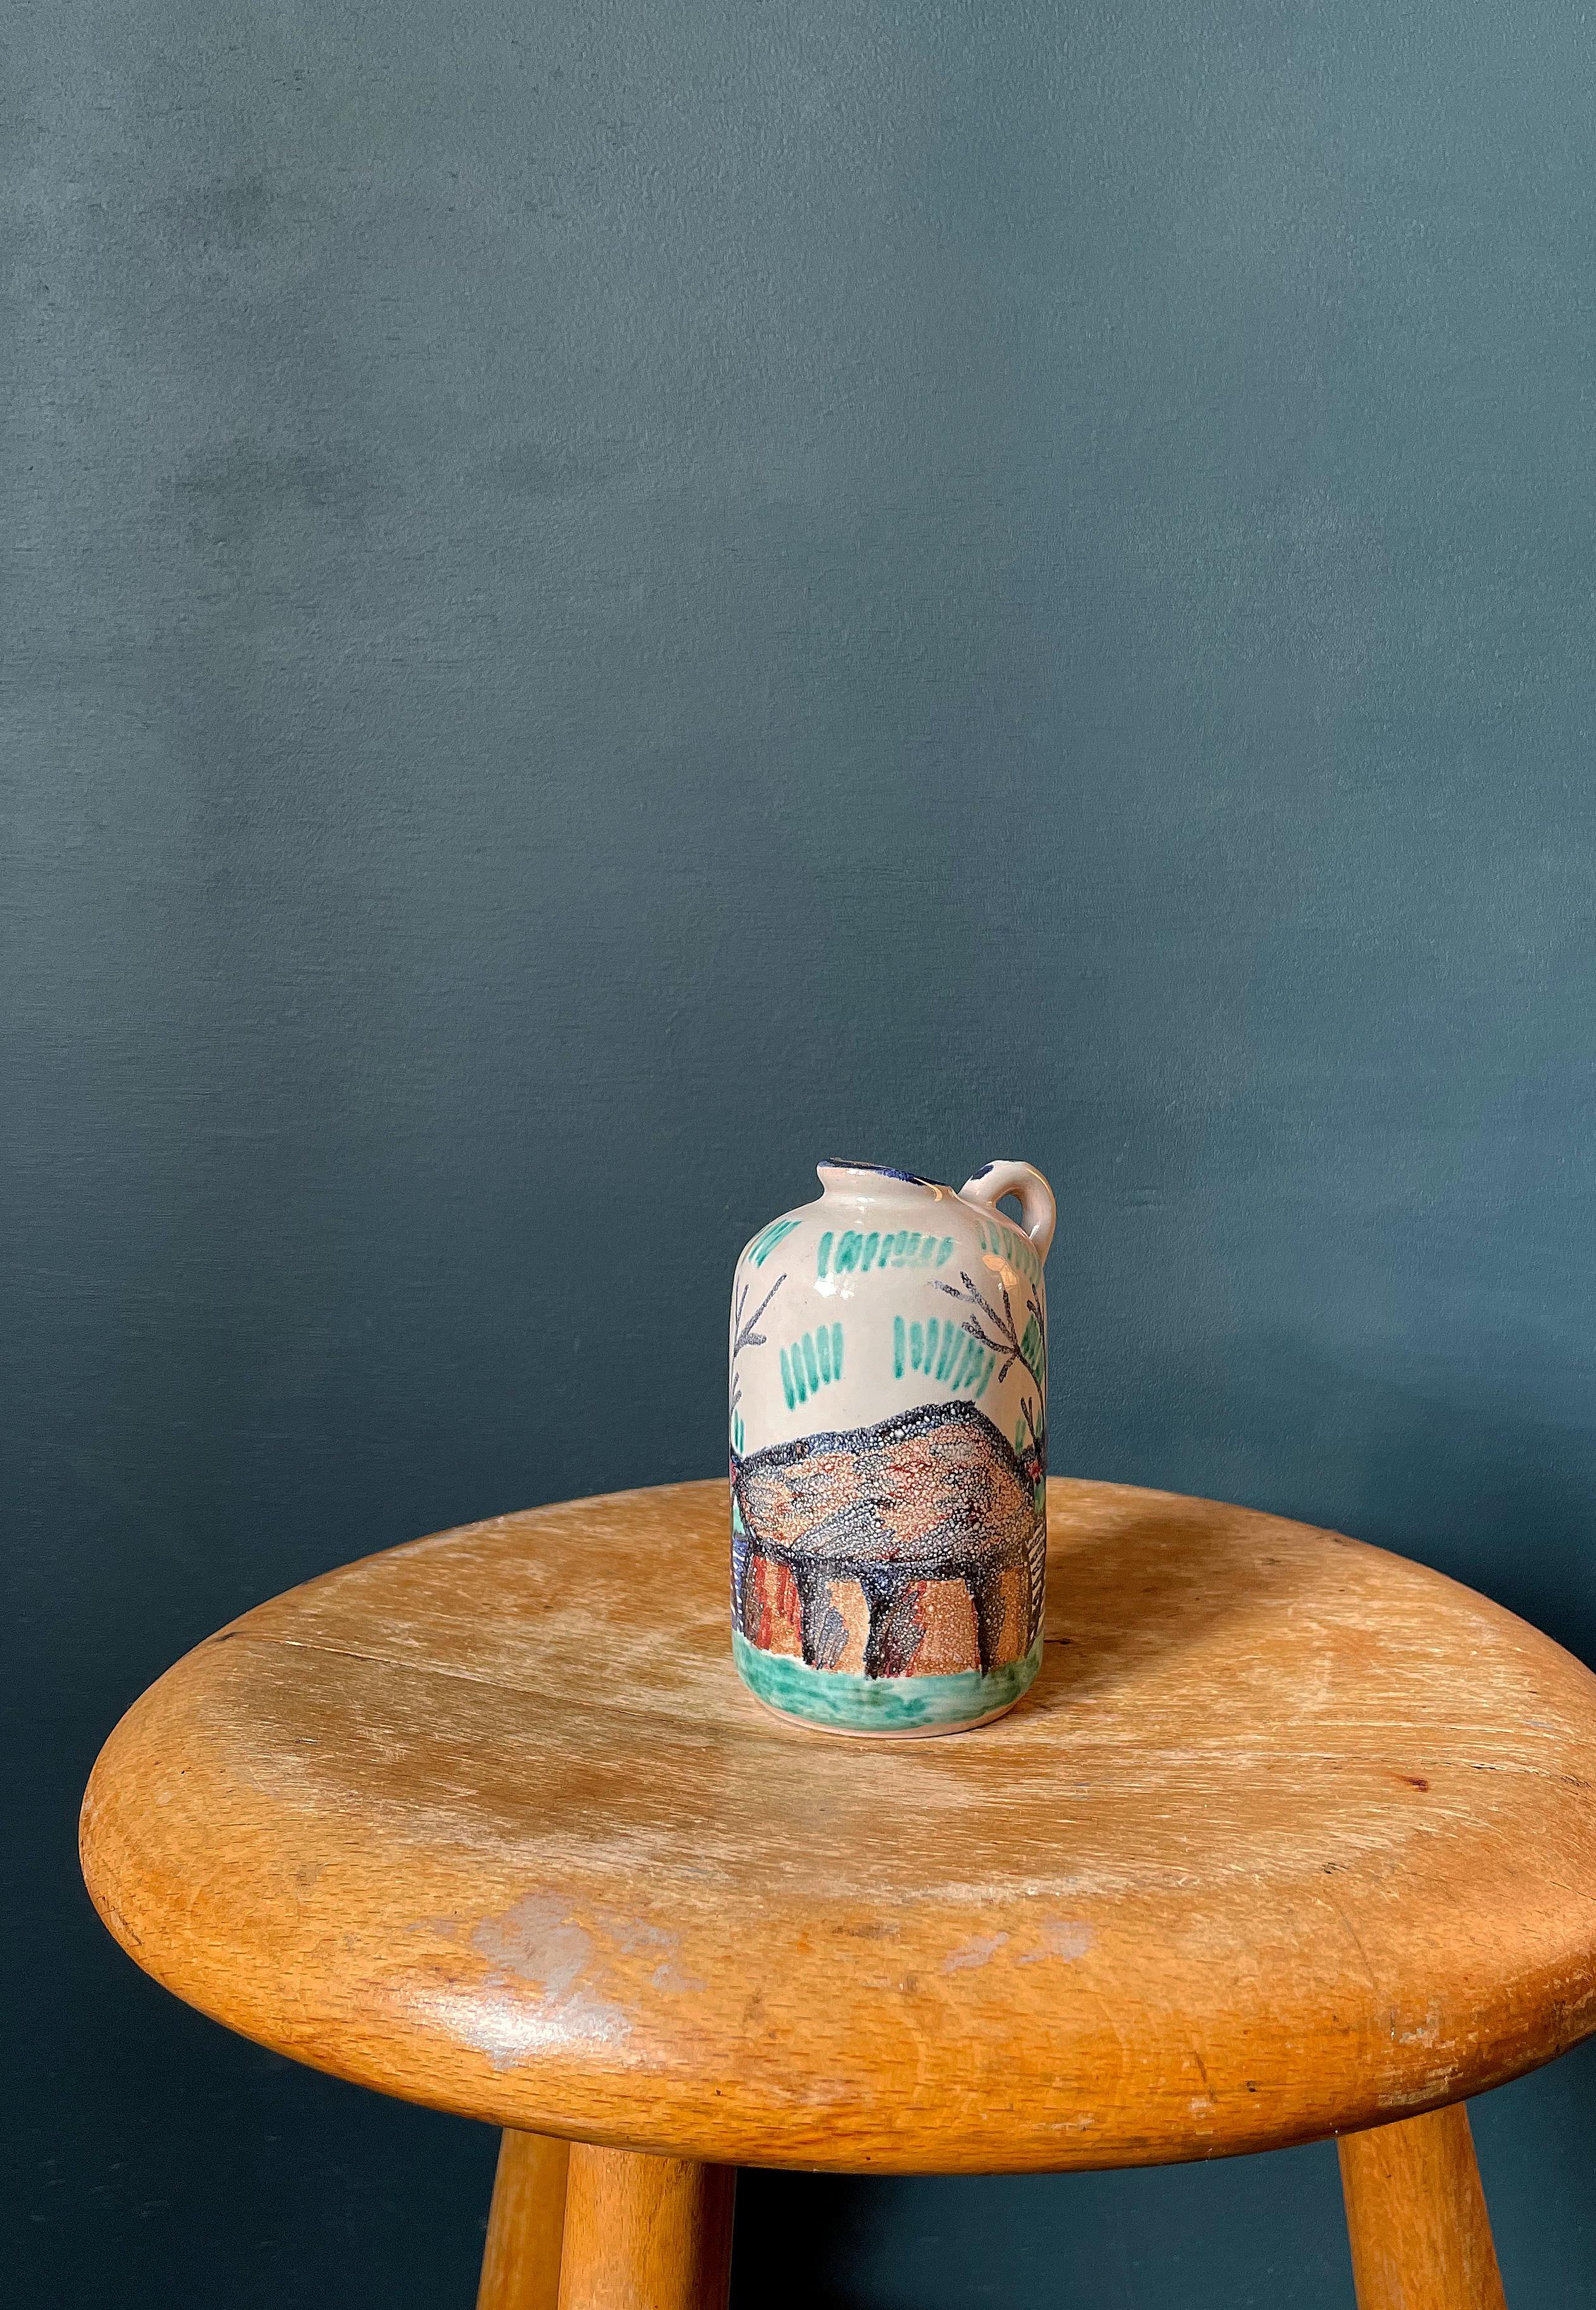 Kleine handbemalte Keramikvase aus der Mitte des Jahrhunderts. Dekoriert mit dem Landschaftsmotiv eines dänischen steinzeitlichen Wikingergrabes aus großen Steinen. Buntes, einzigartiges Dekor auf weißem Kreidegrund. Blaue Glasur am Ausguss und